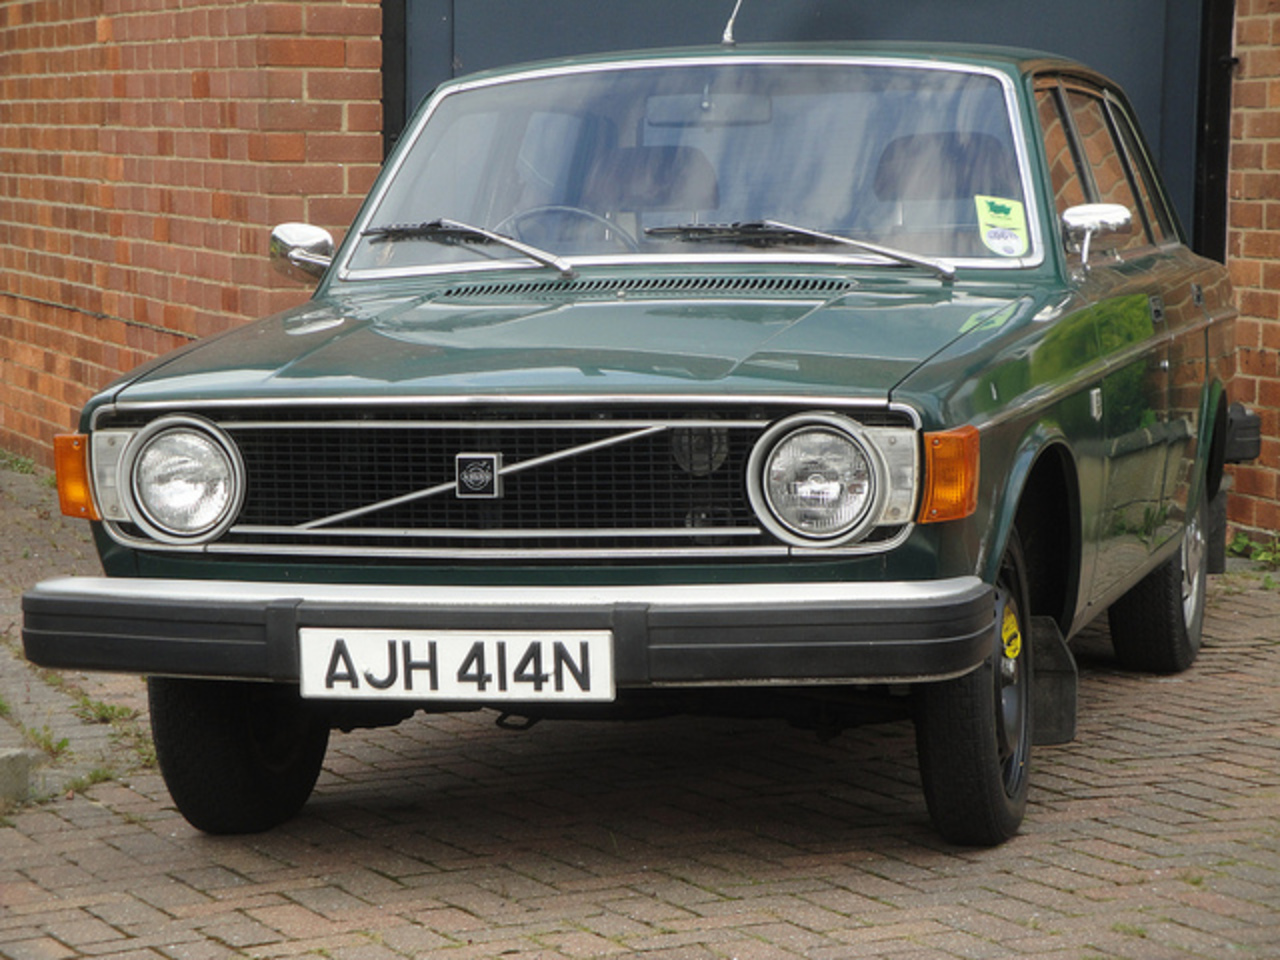 1974 Volvo 144 DL | Flickr - Photo Sharing!